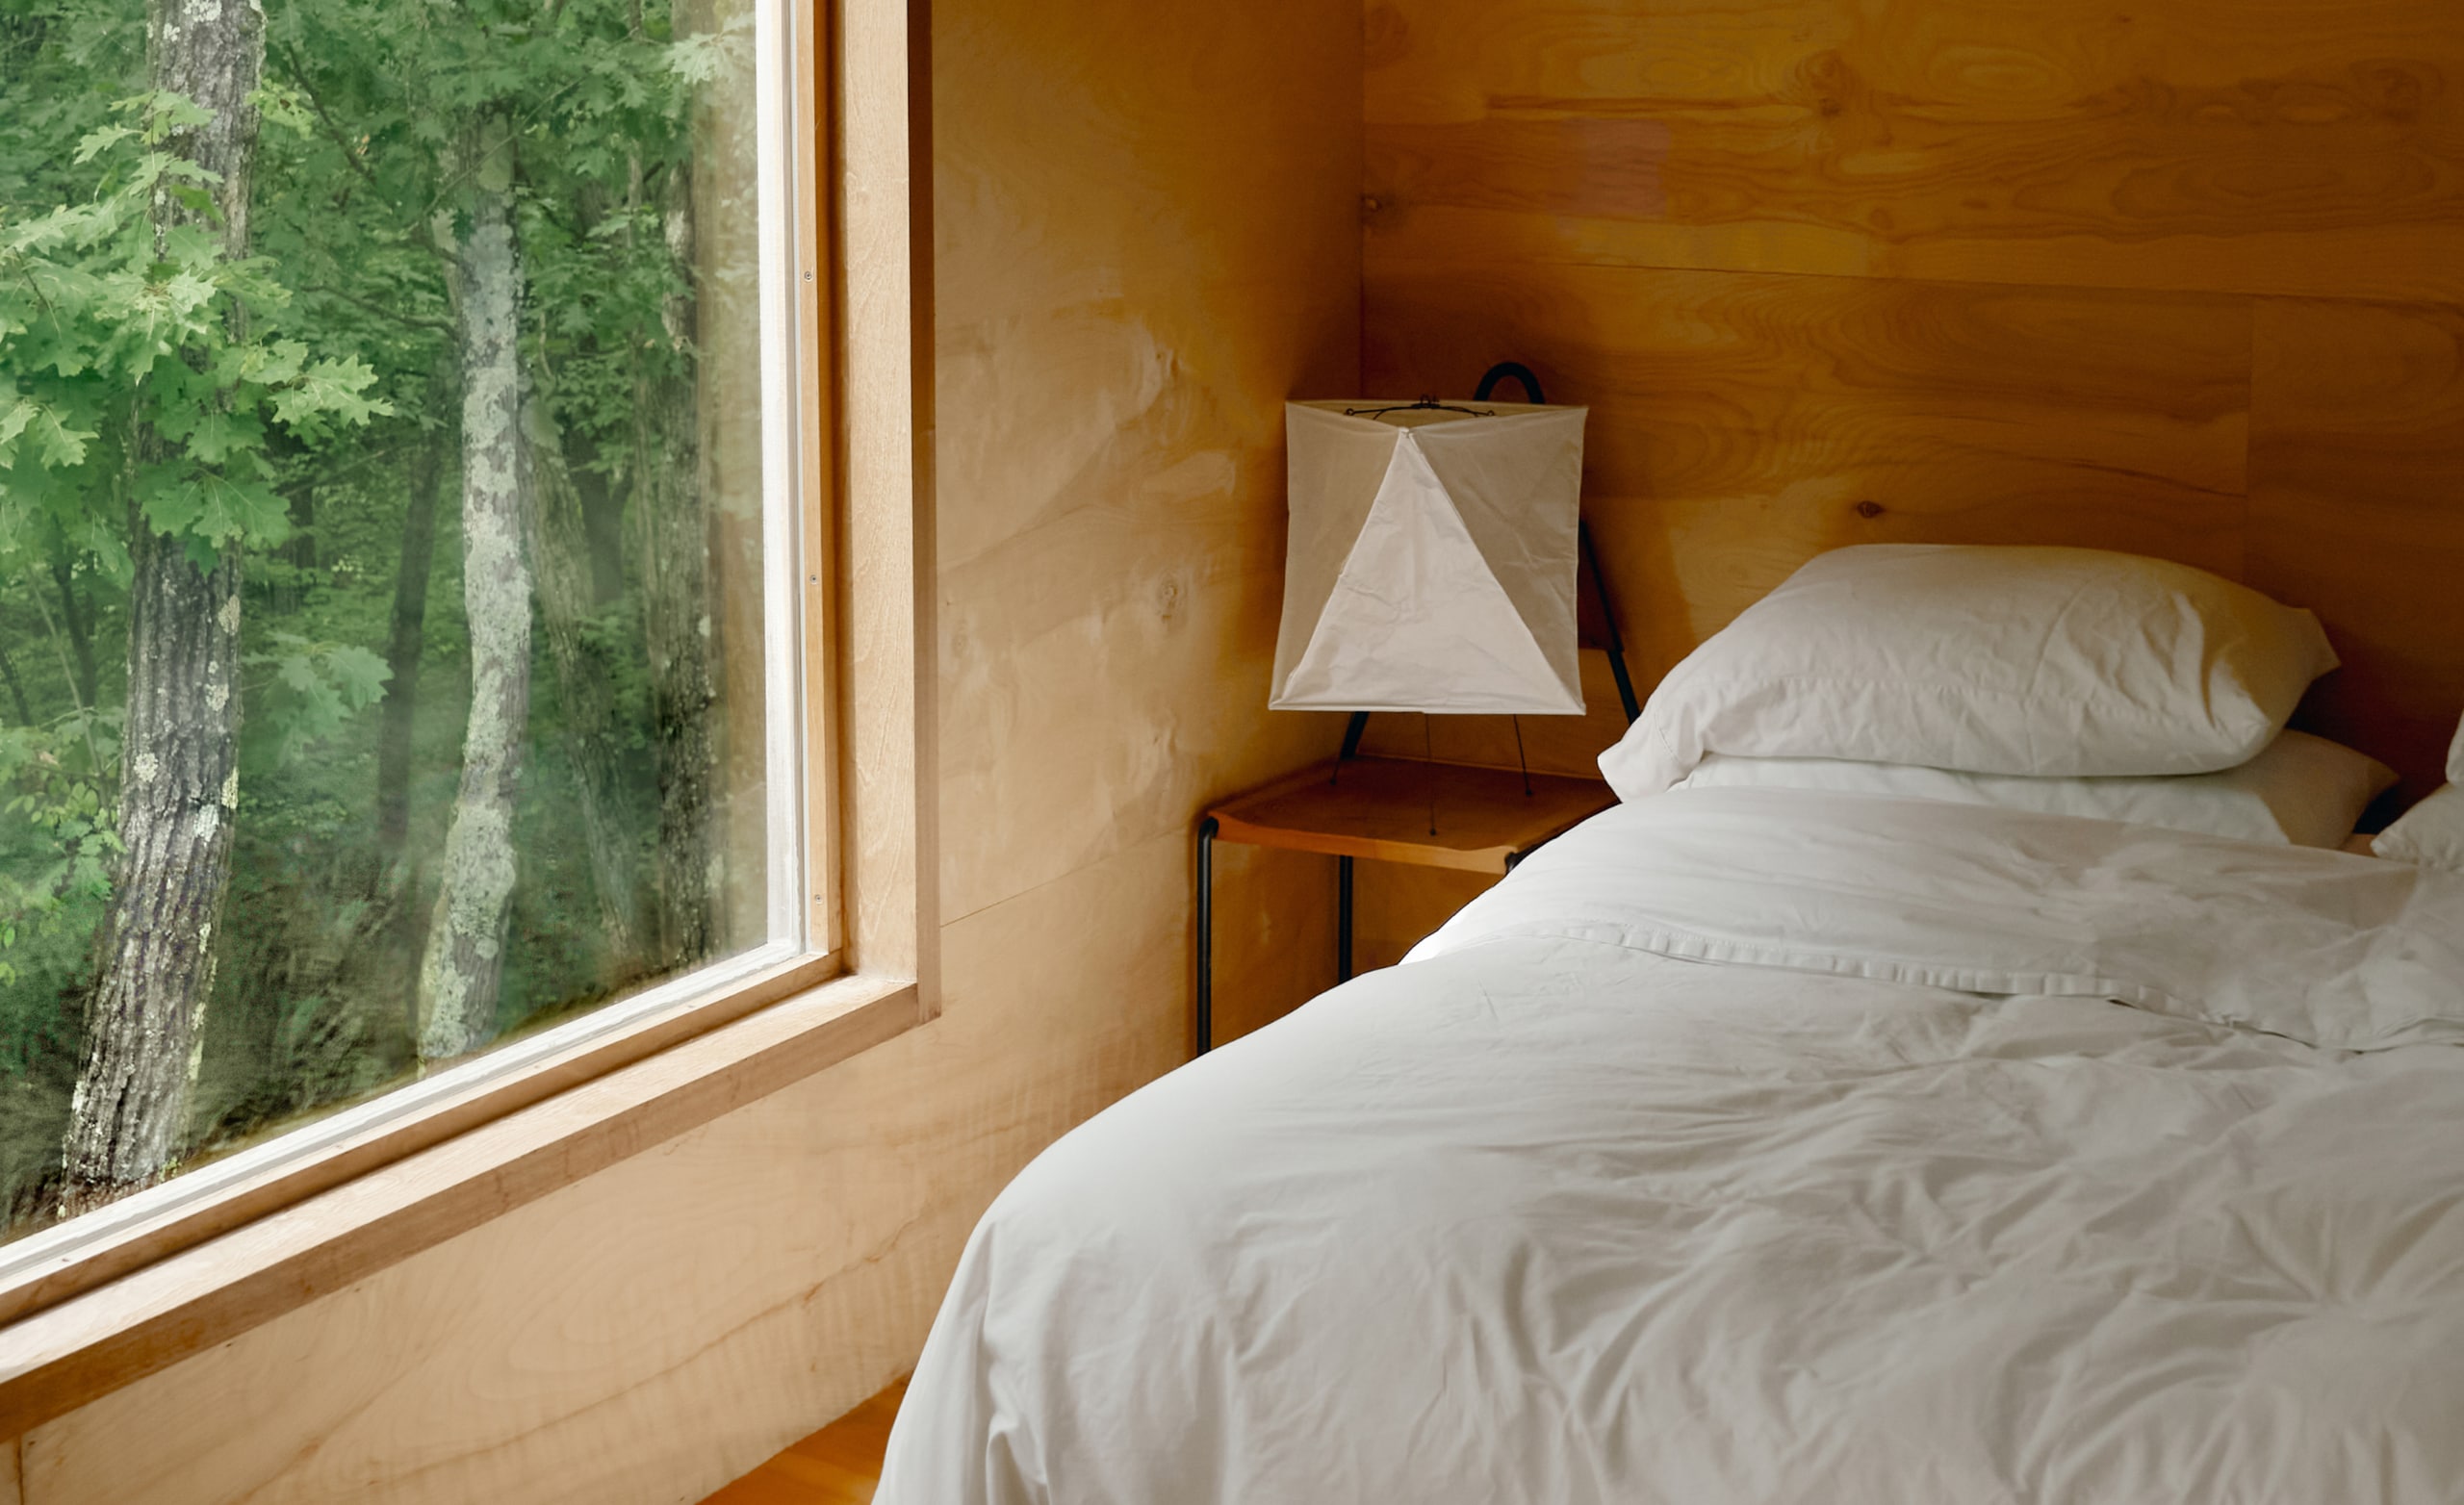 Una habitación con una cama de sábanas blancas recién tendidas y una gran ventana desde donde pueden verse árboles afuera.